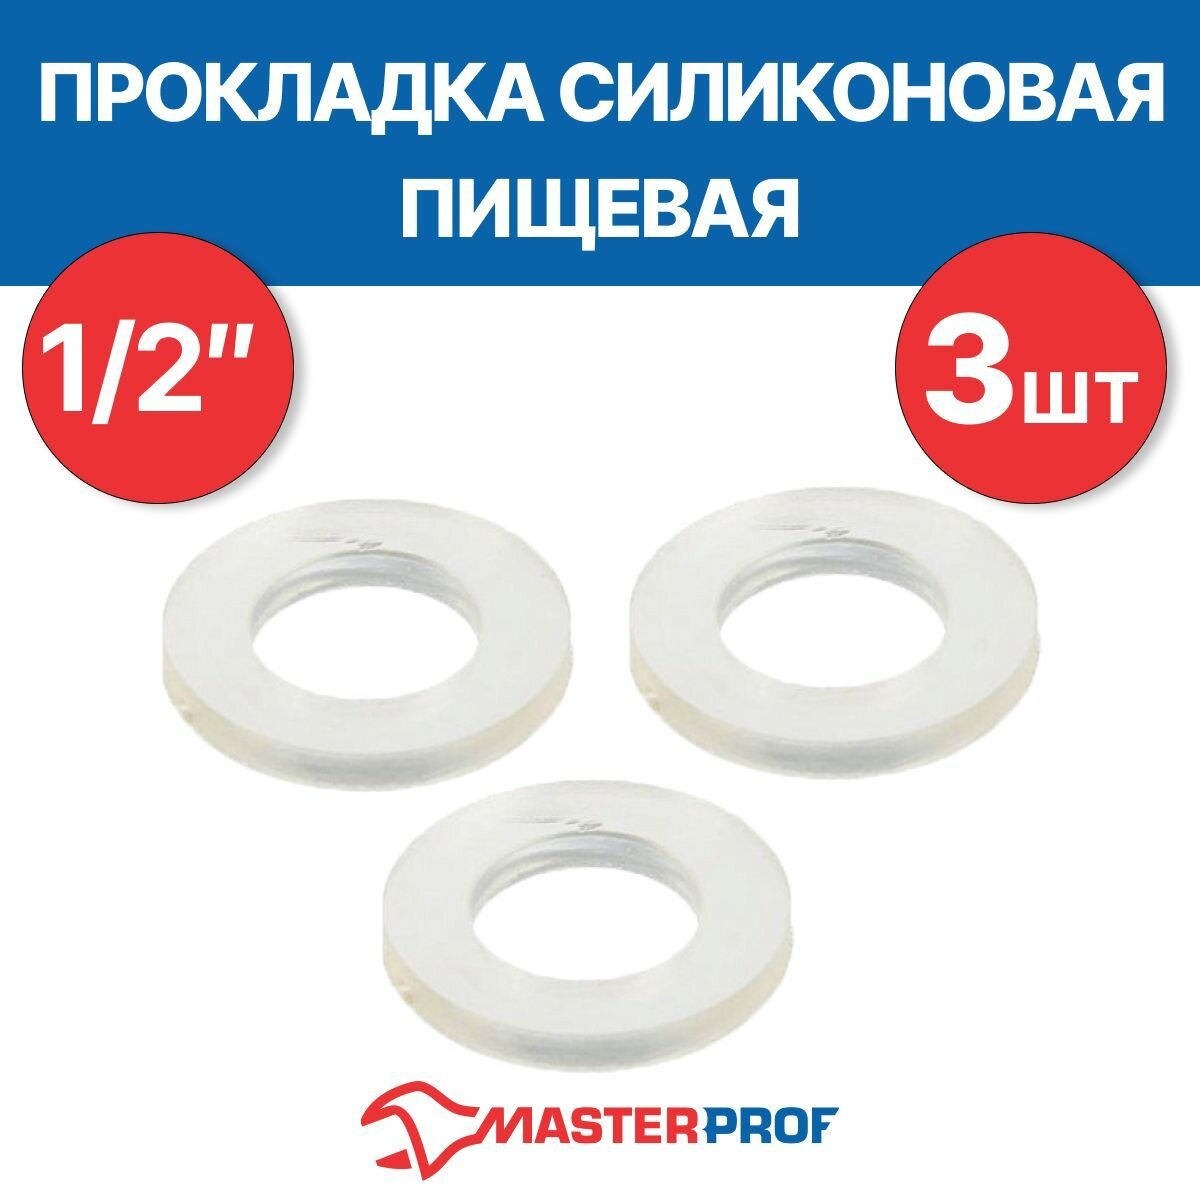 Прокладка силиконовая пищевая MPF 1/2" 3 шт.